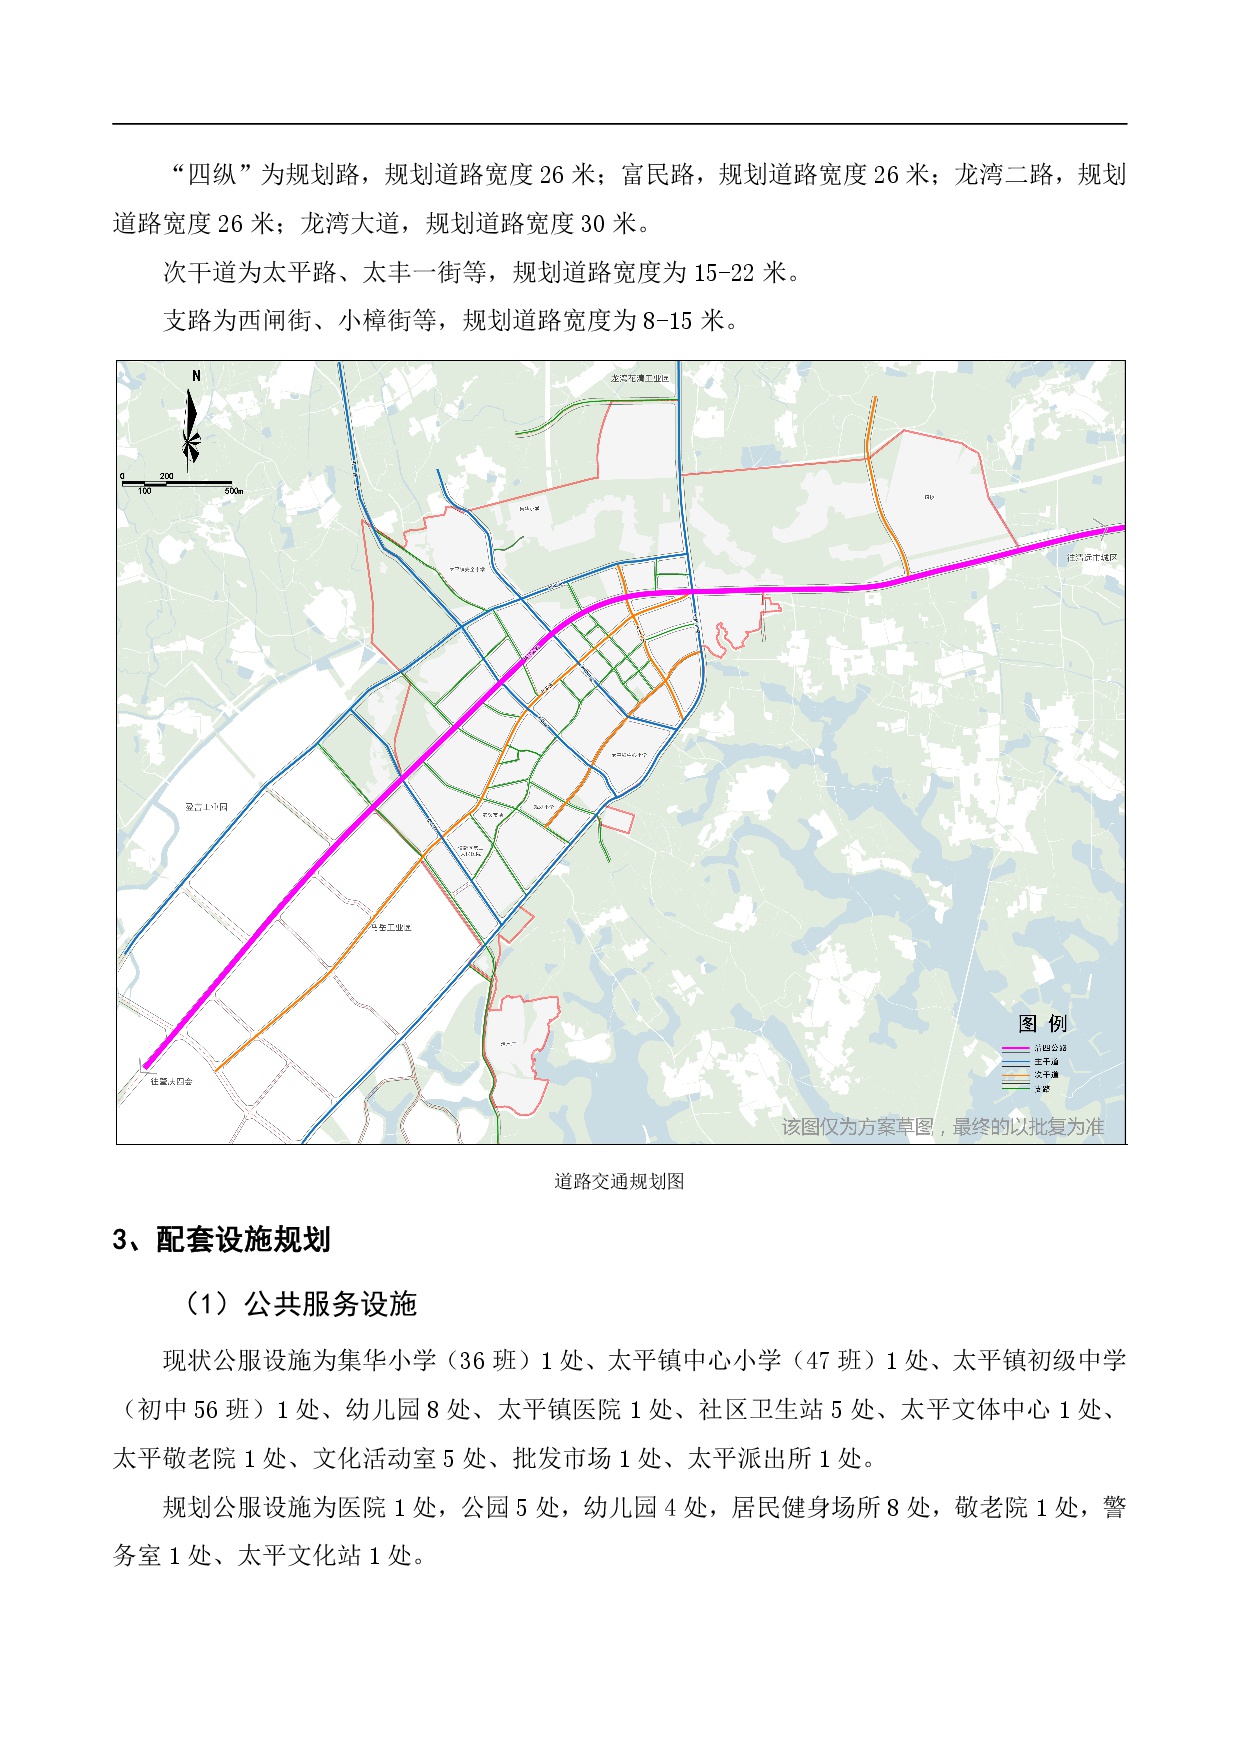 《清新区太平镇区控制性详细规划修编》草案公示1225-004.jpg